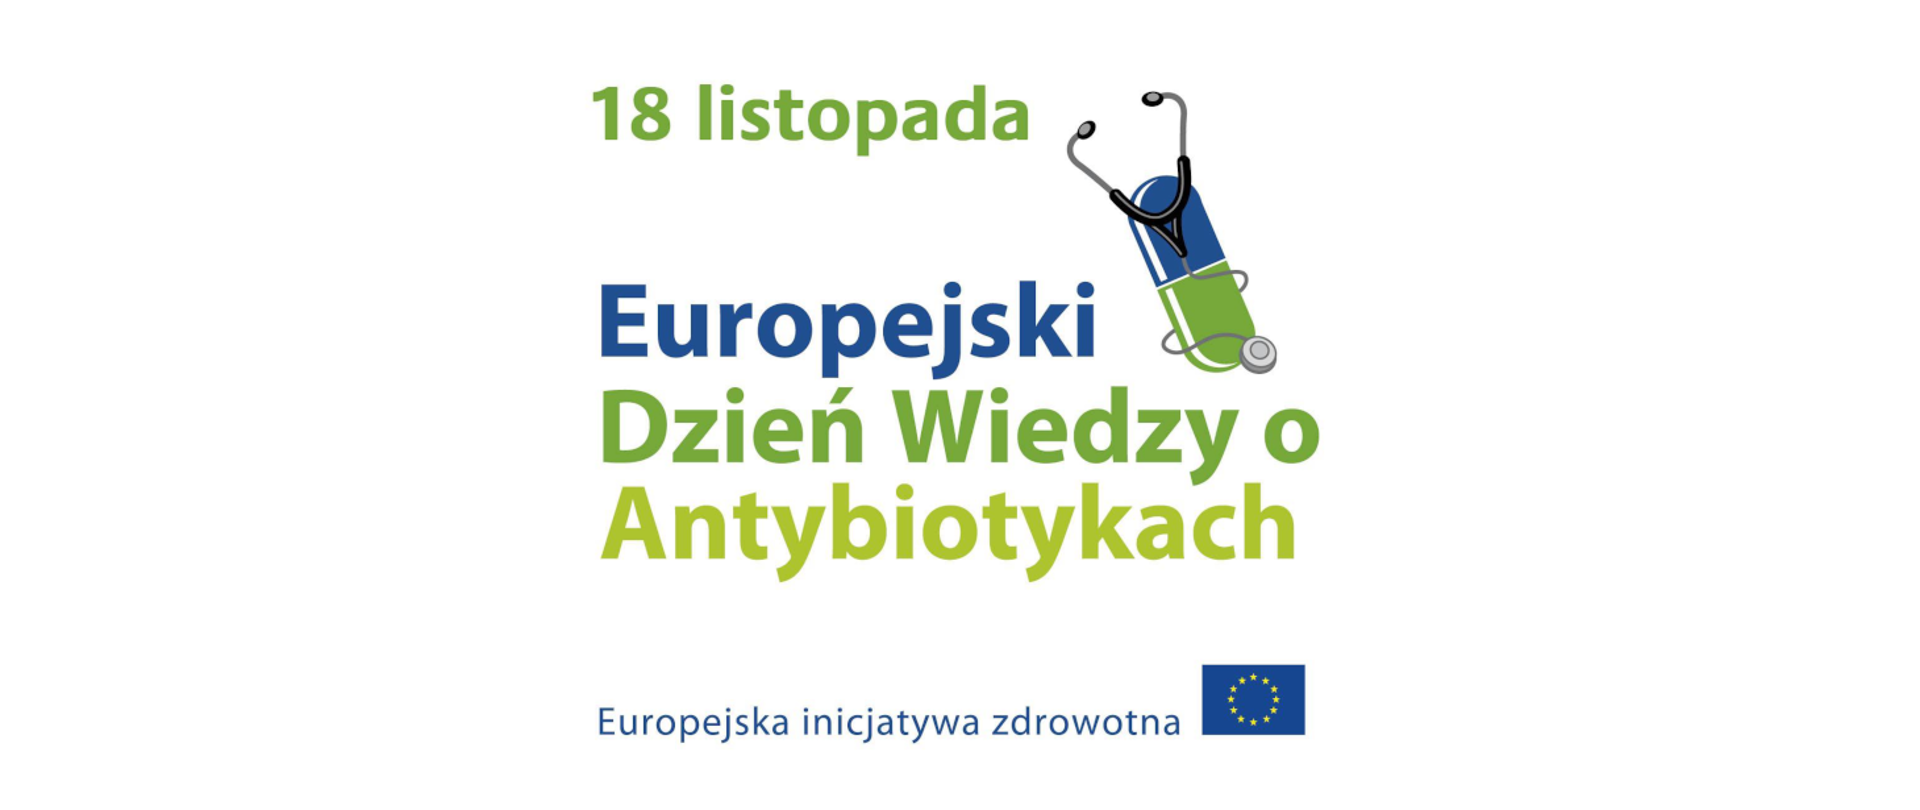 Europejski dzien wiedzy o antybiotykach